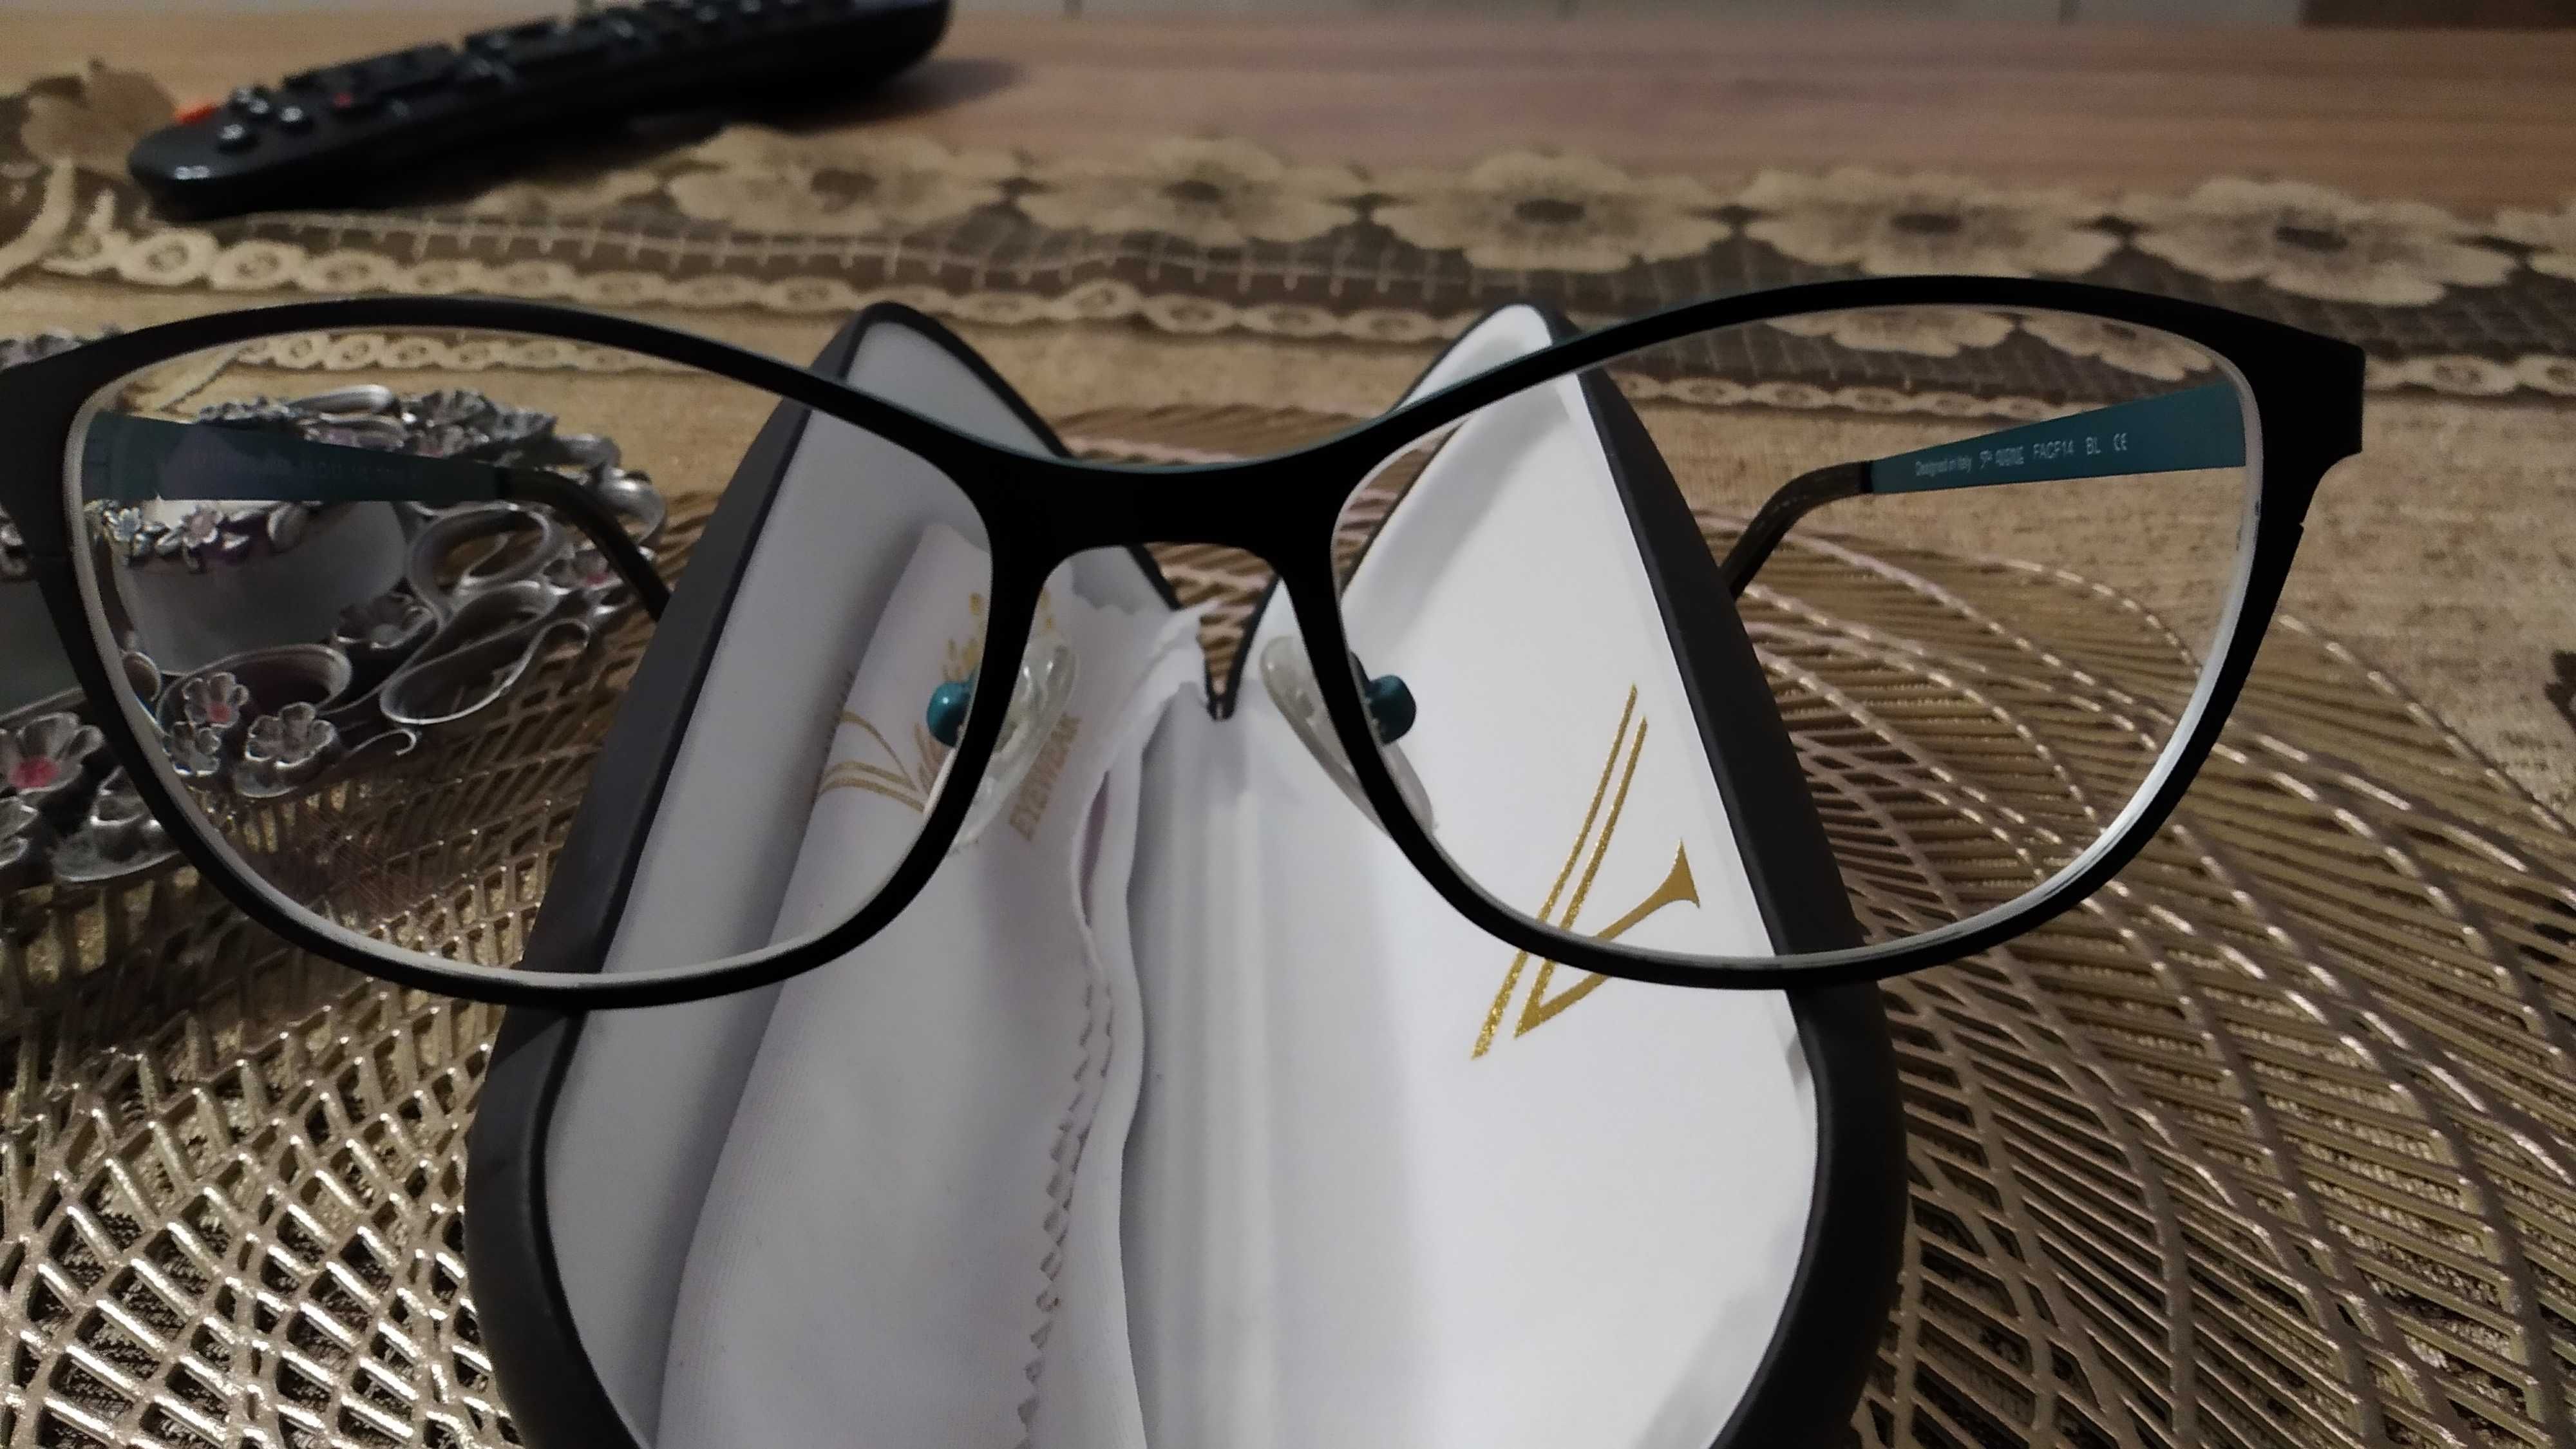 Nowe okulary korekcyjne -2.75 5th Advenue 700zł